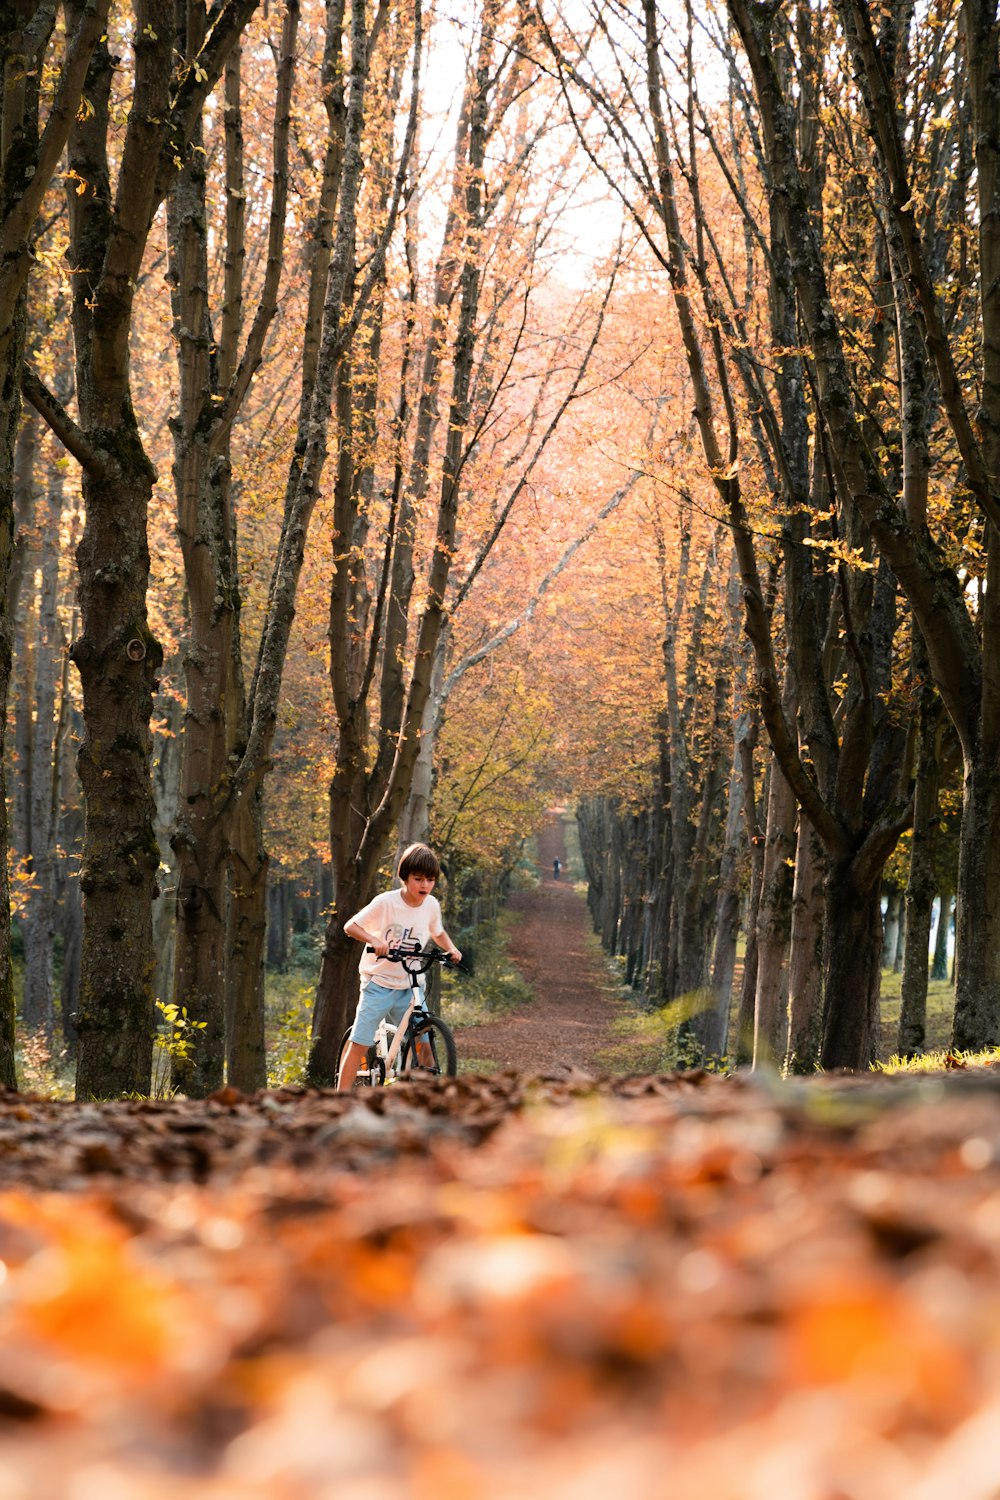 葉っぱに覆われた道を自転車で走る男